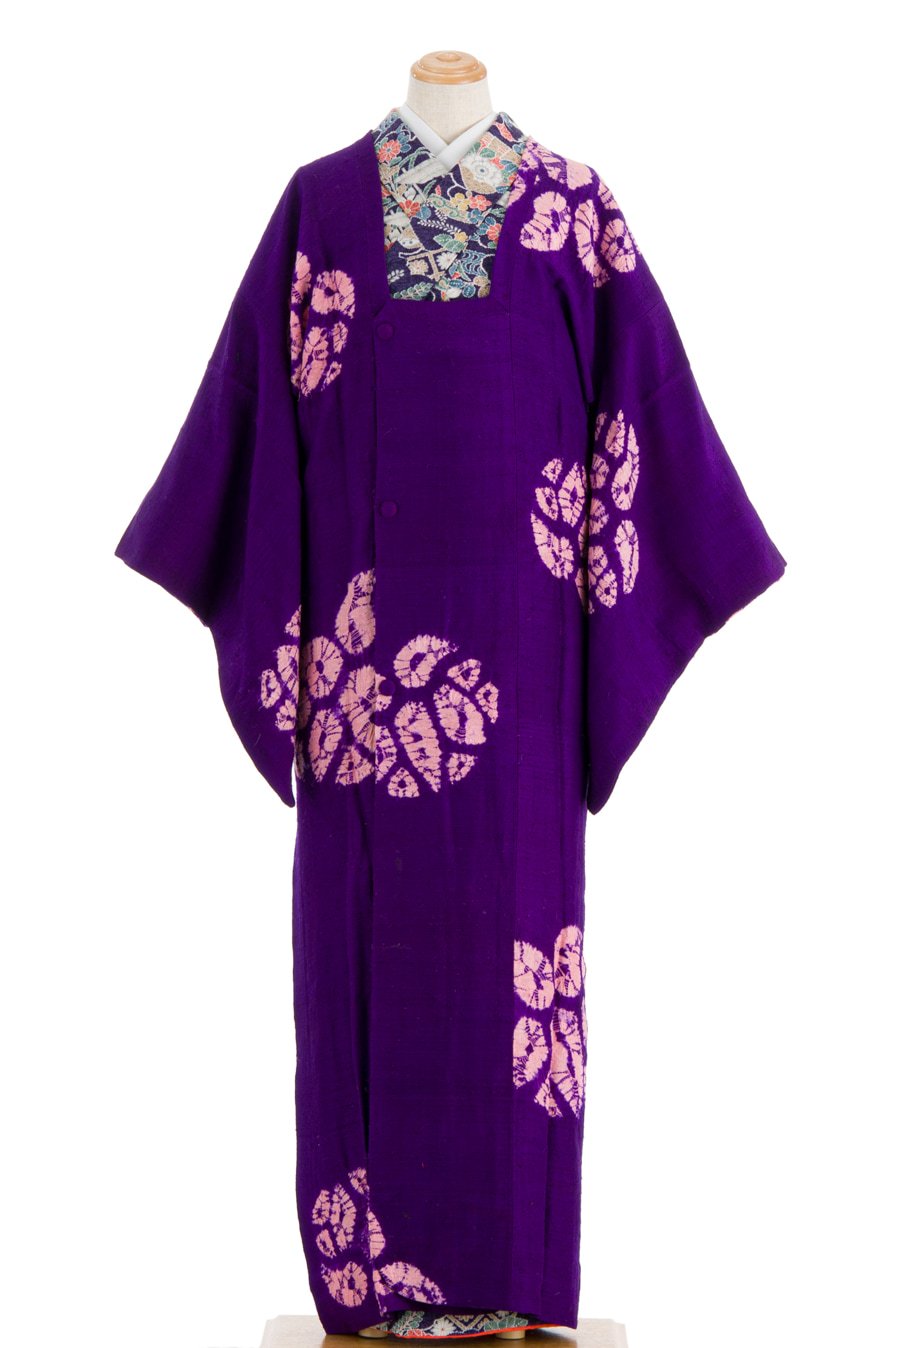 アンティーク着物 ロングコート 絞りの葵 からん::アンティーク着物・リサイクル着物の通販サイト